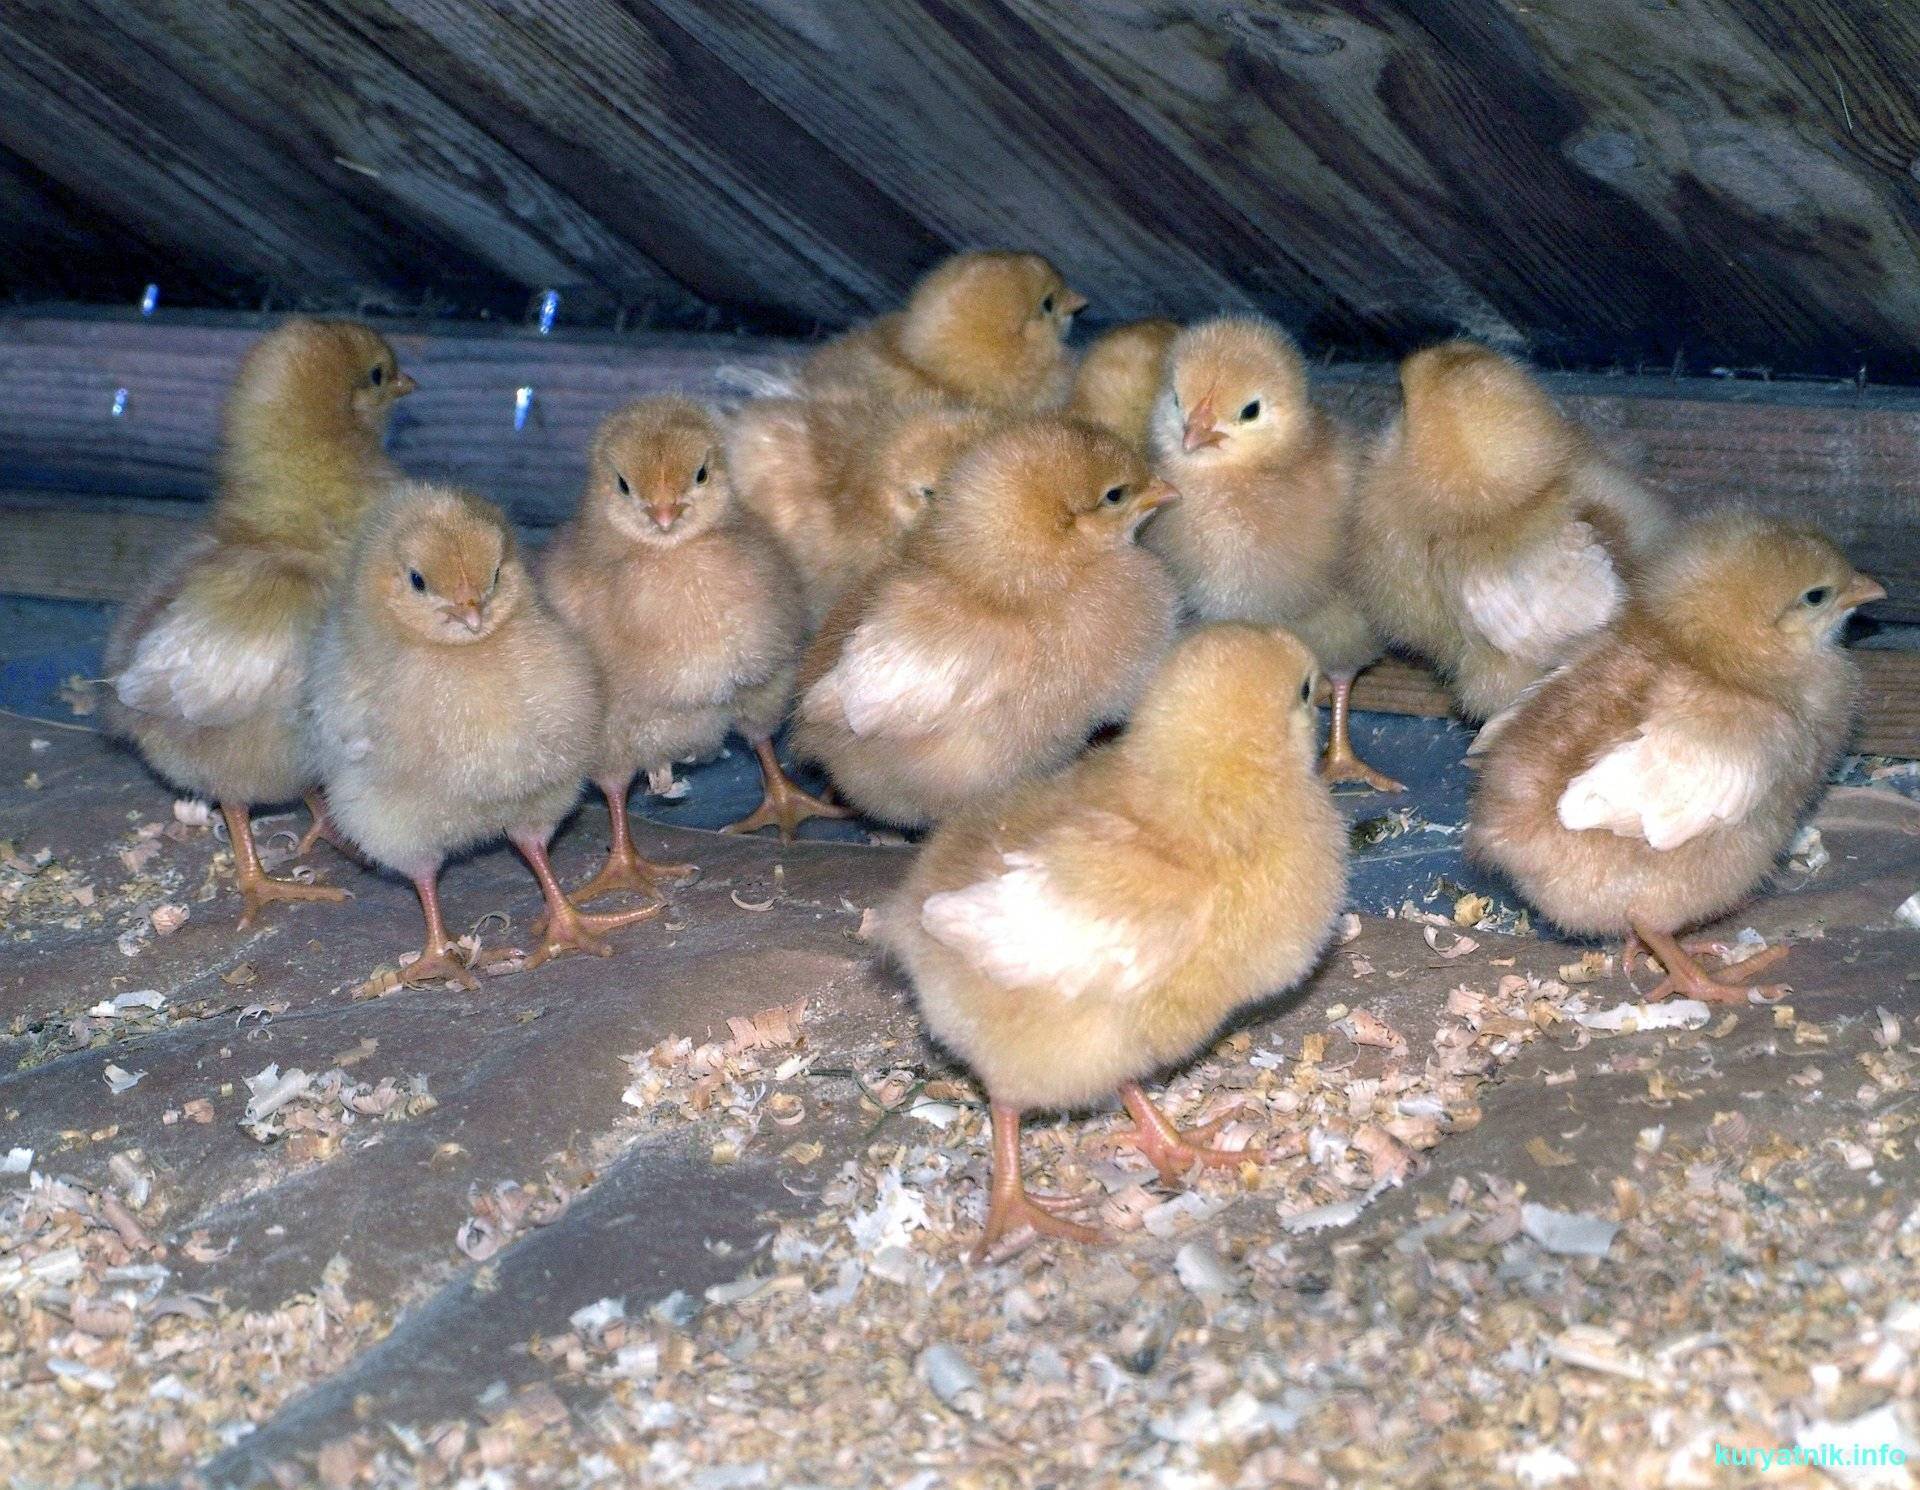 Выращивание цыплят, содержание и кормление в домашних условиях